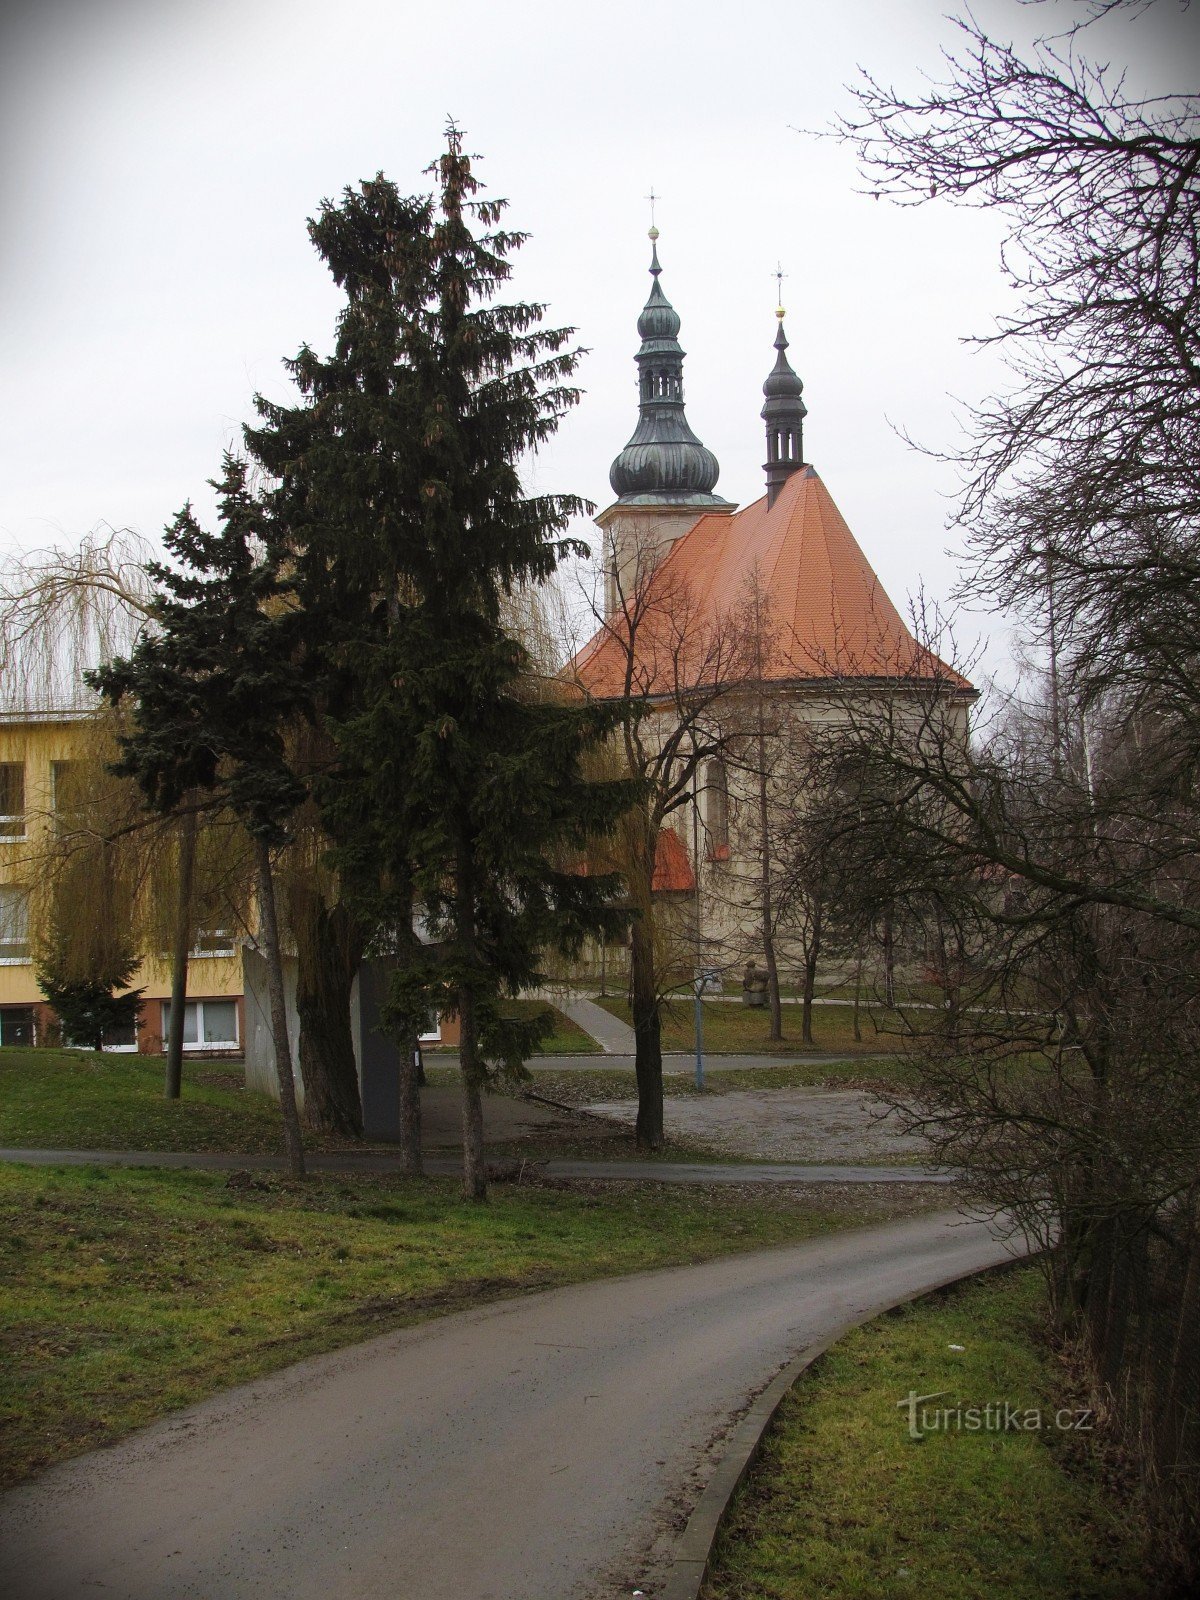 Chřiby - Nhà thờ Đức Mẹ Maria ở Střílky